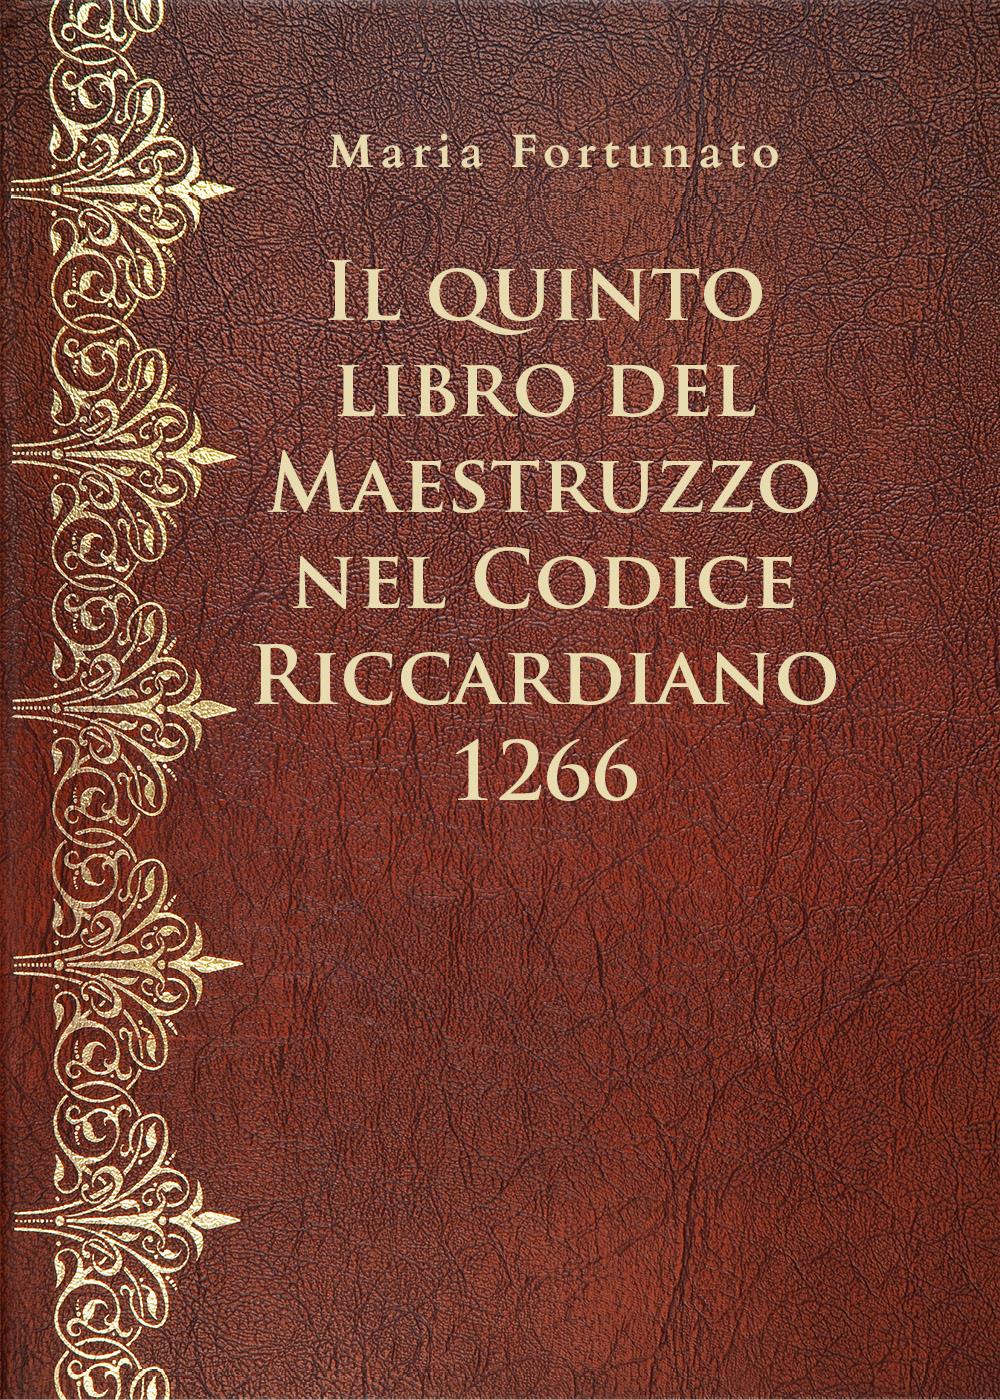 Il quinto libro del Maestruzzo nel Codice Riccardiano 1266